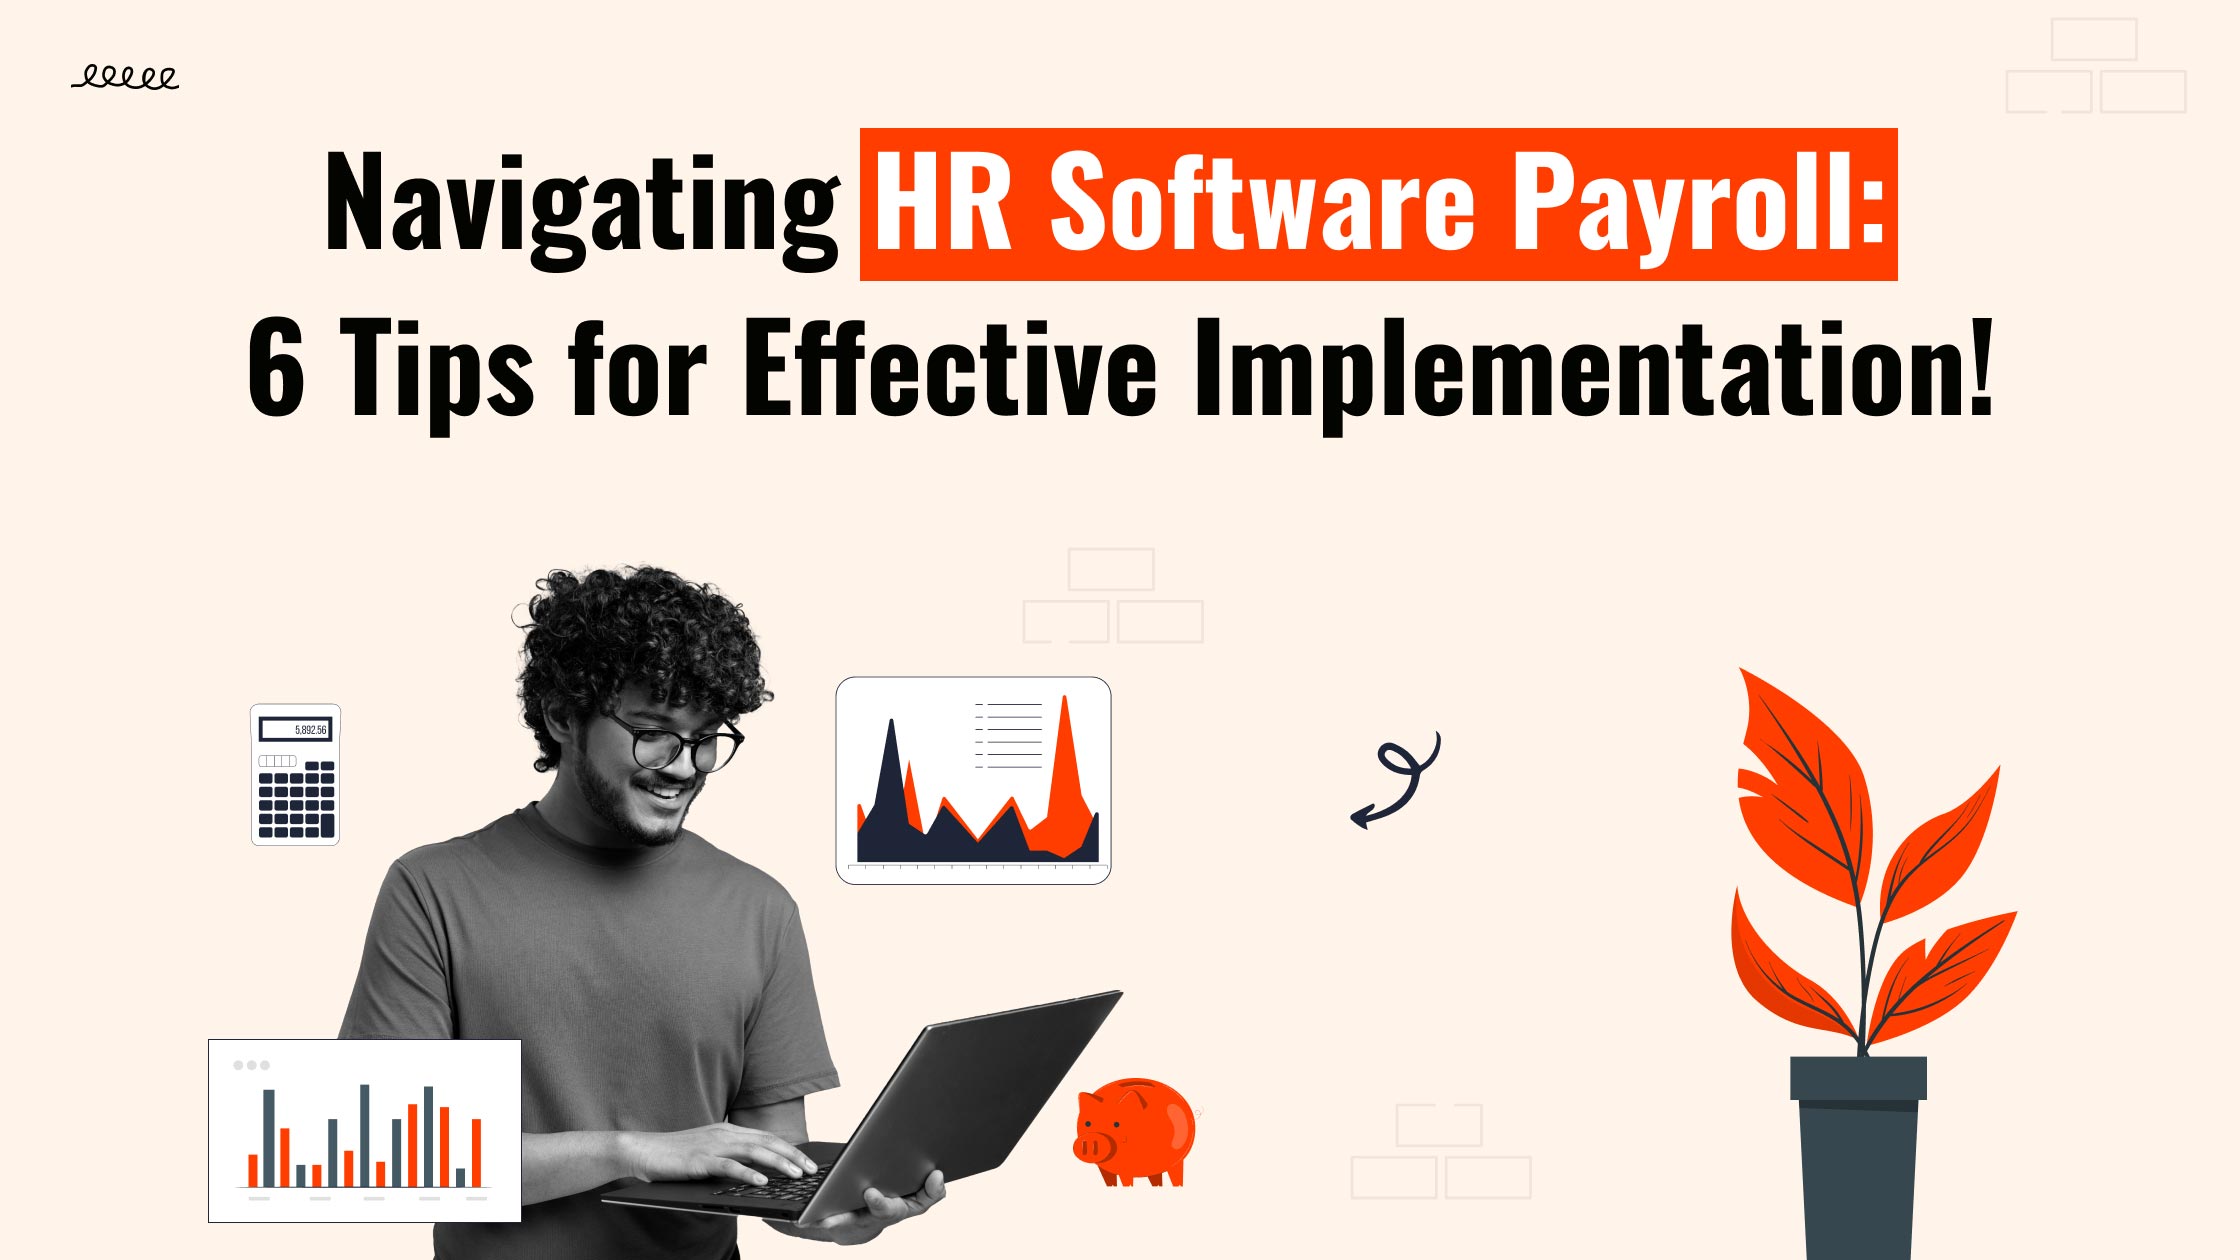 HR software payroll